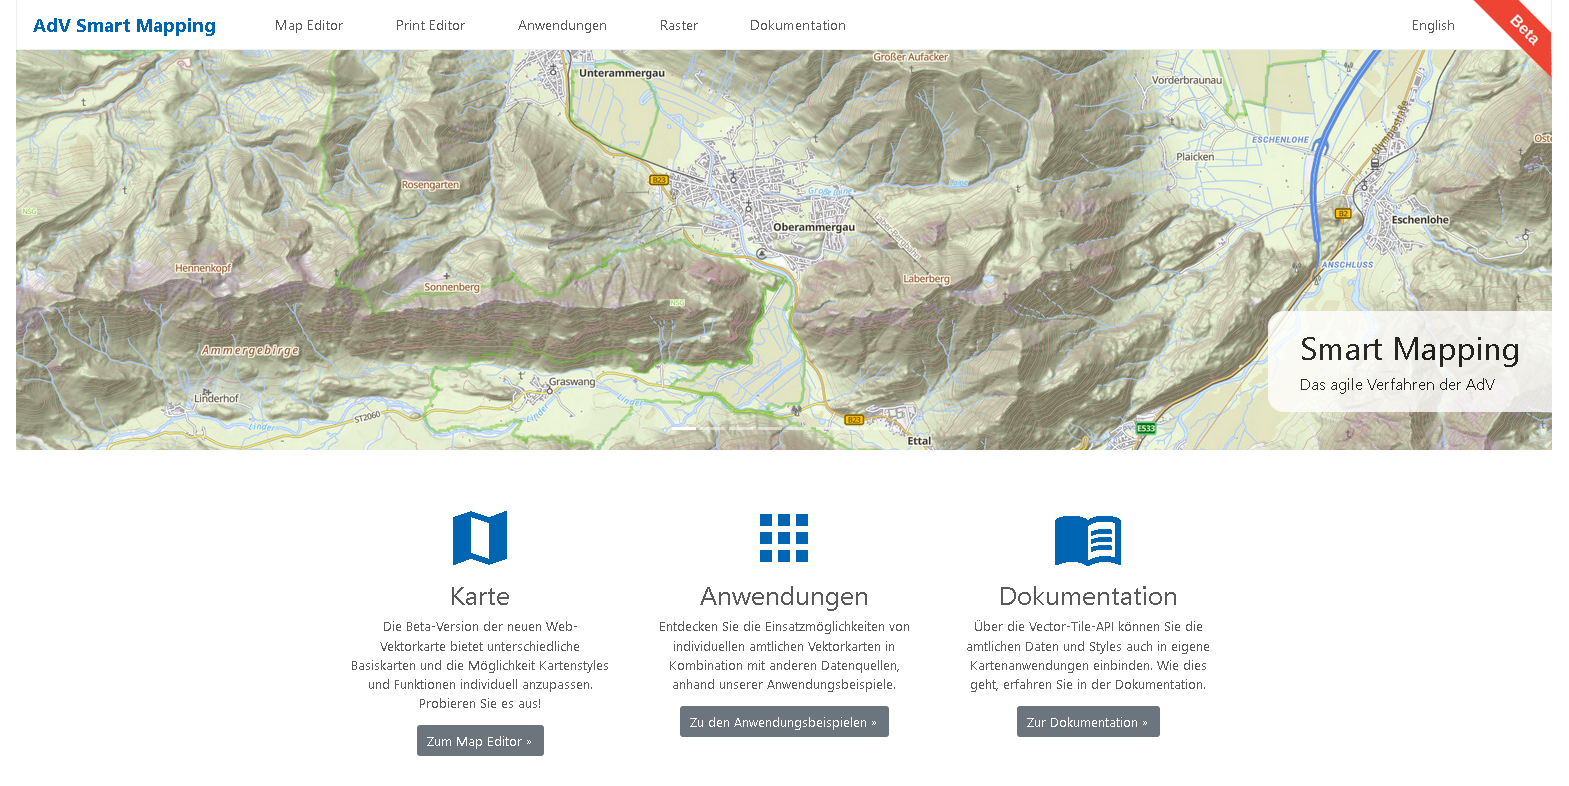 Bild zeigt die Webseite "AdV Smart Mapping"